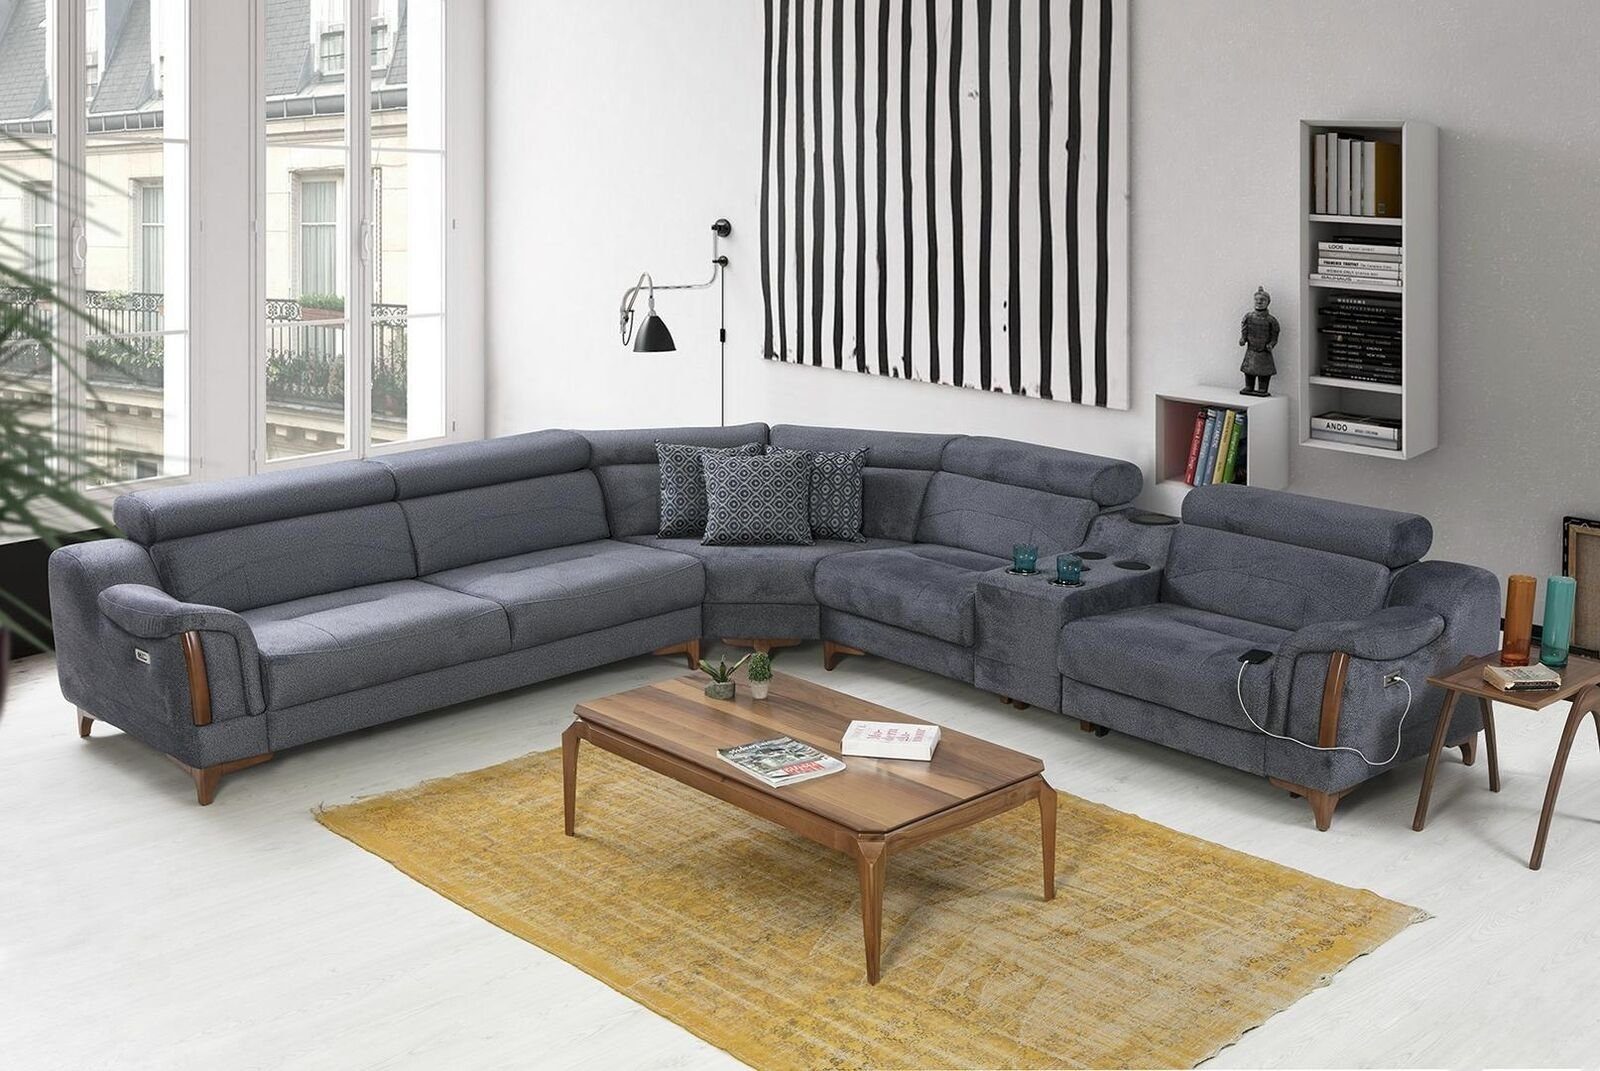 JVmoebel Ecksofa Europa Modern Wohnzimmer Sofa Design Luxus Ecksofa Made Möbel, Teile, 5 L-Form in Grau